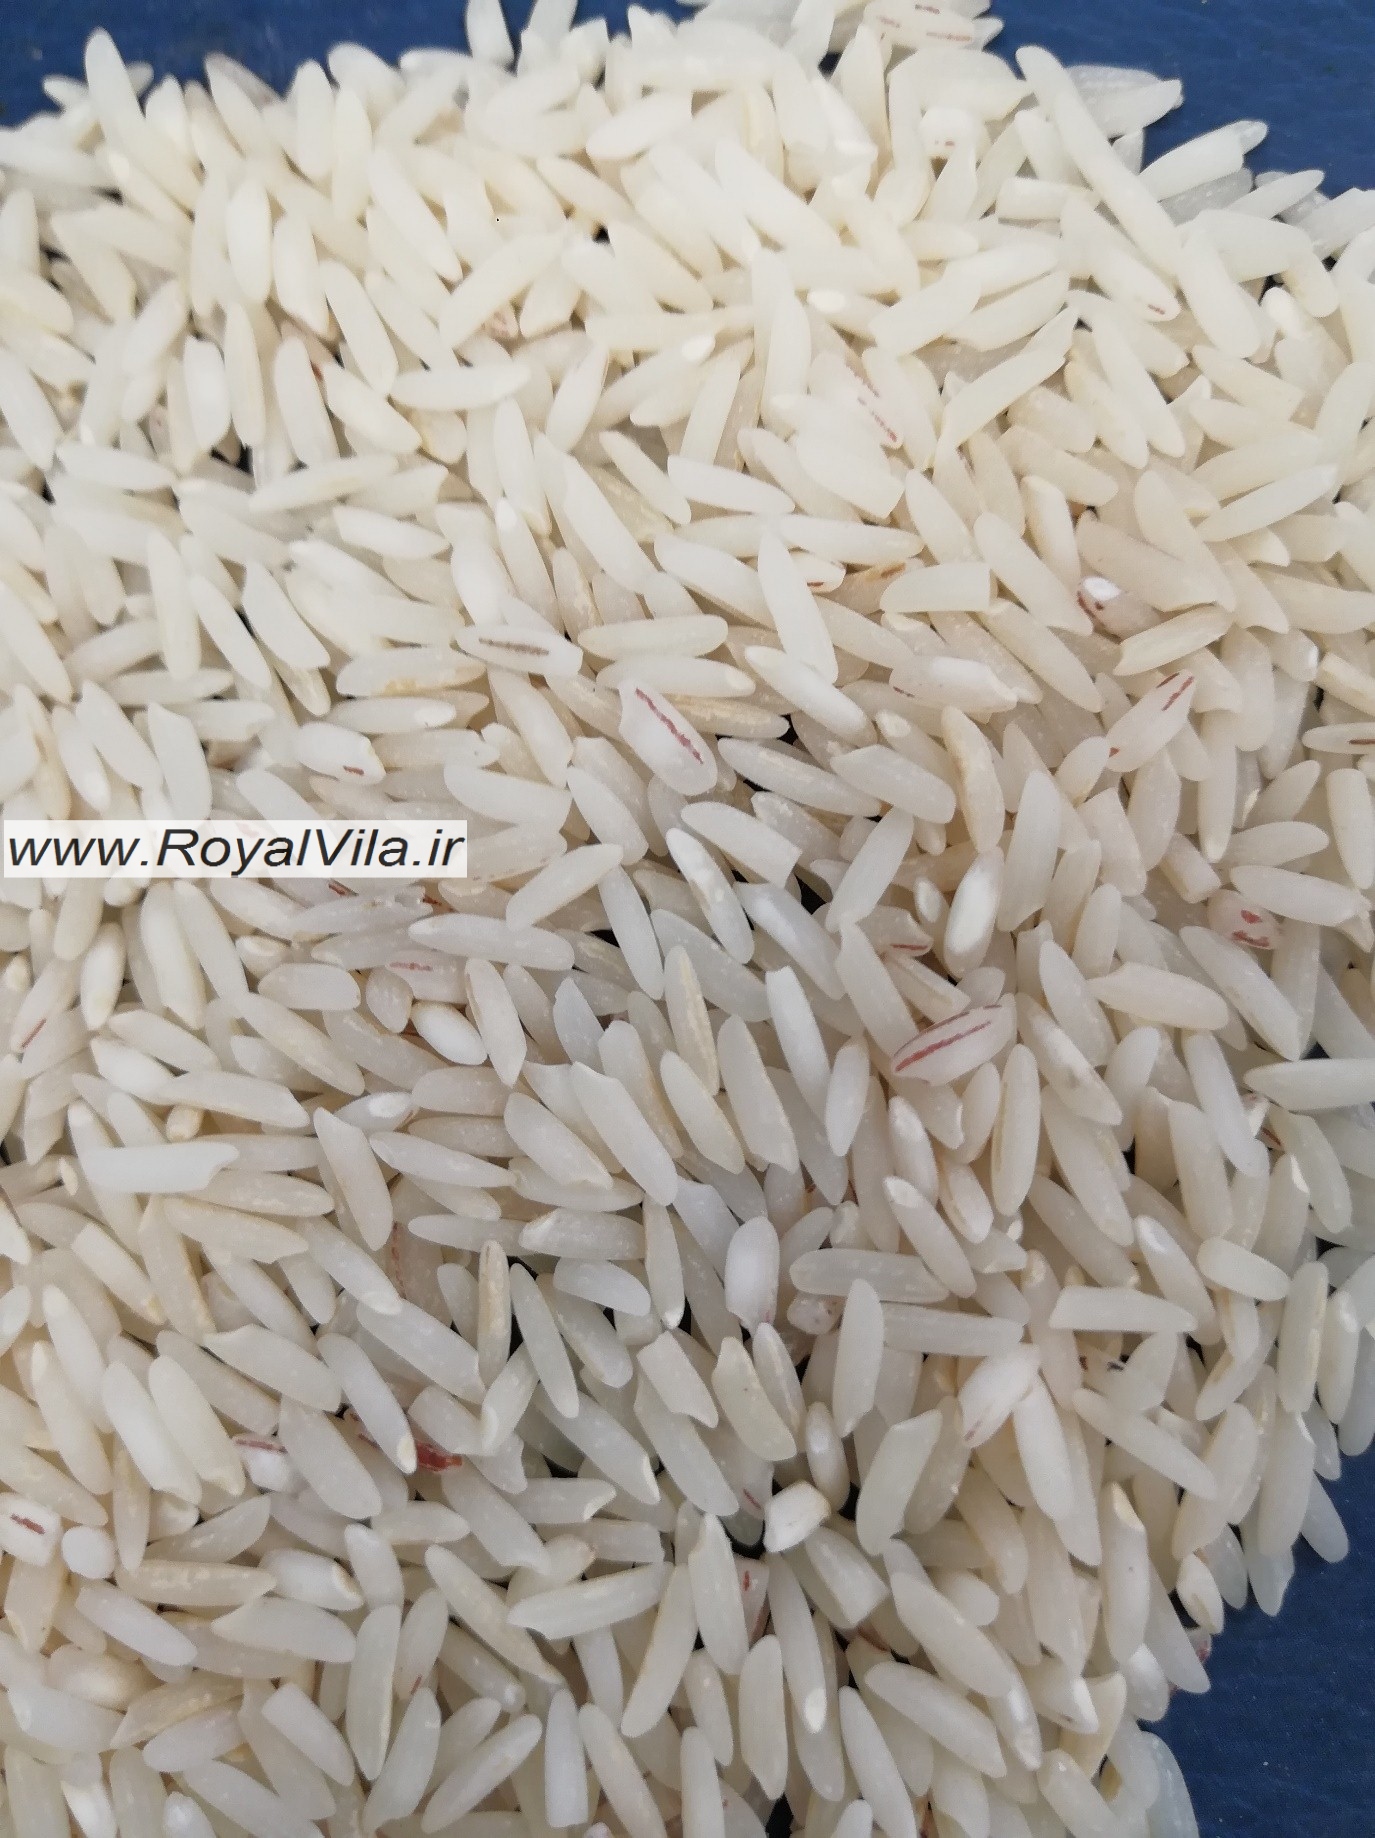 آمل، قطب تولید برنج کشور می باشد